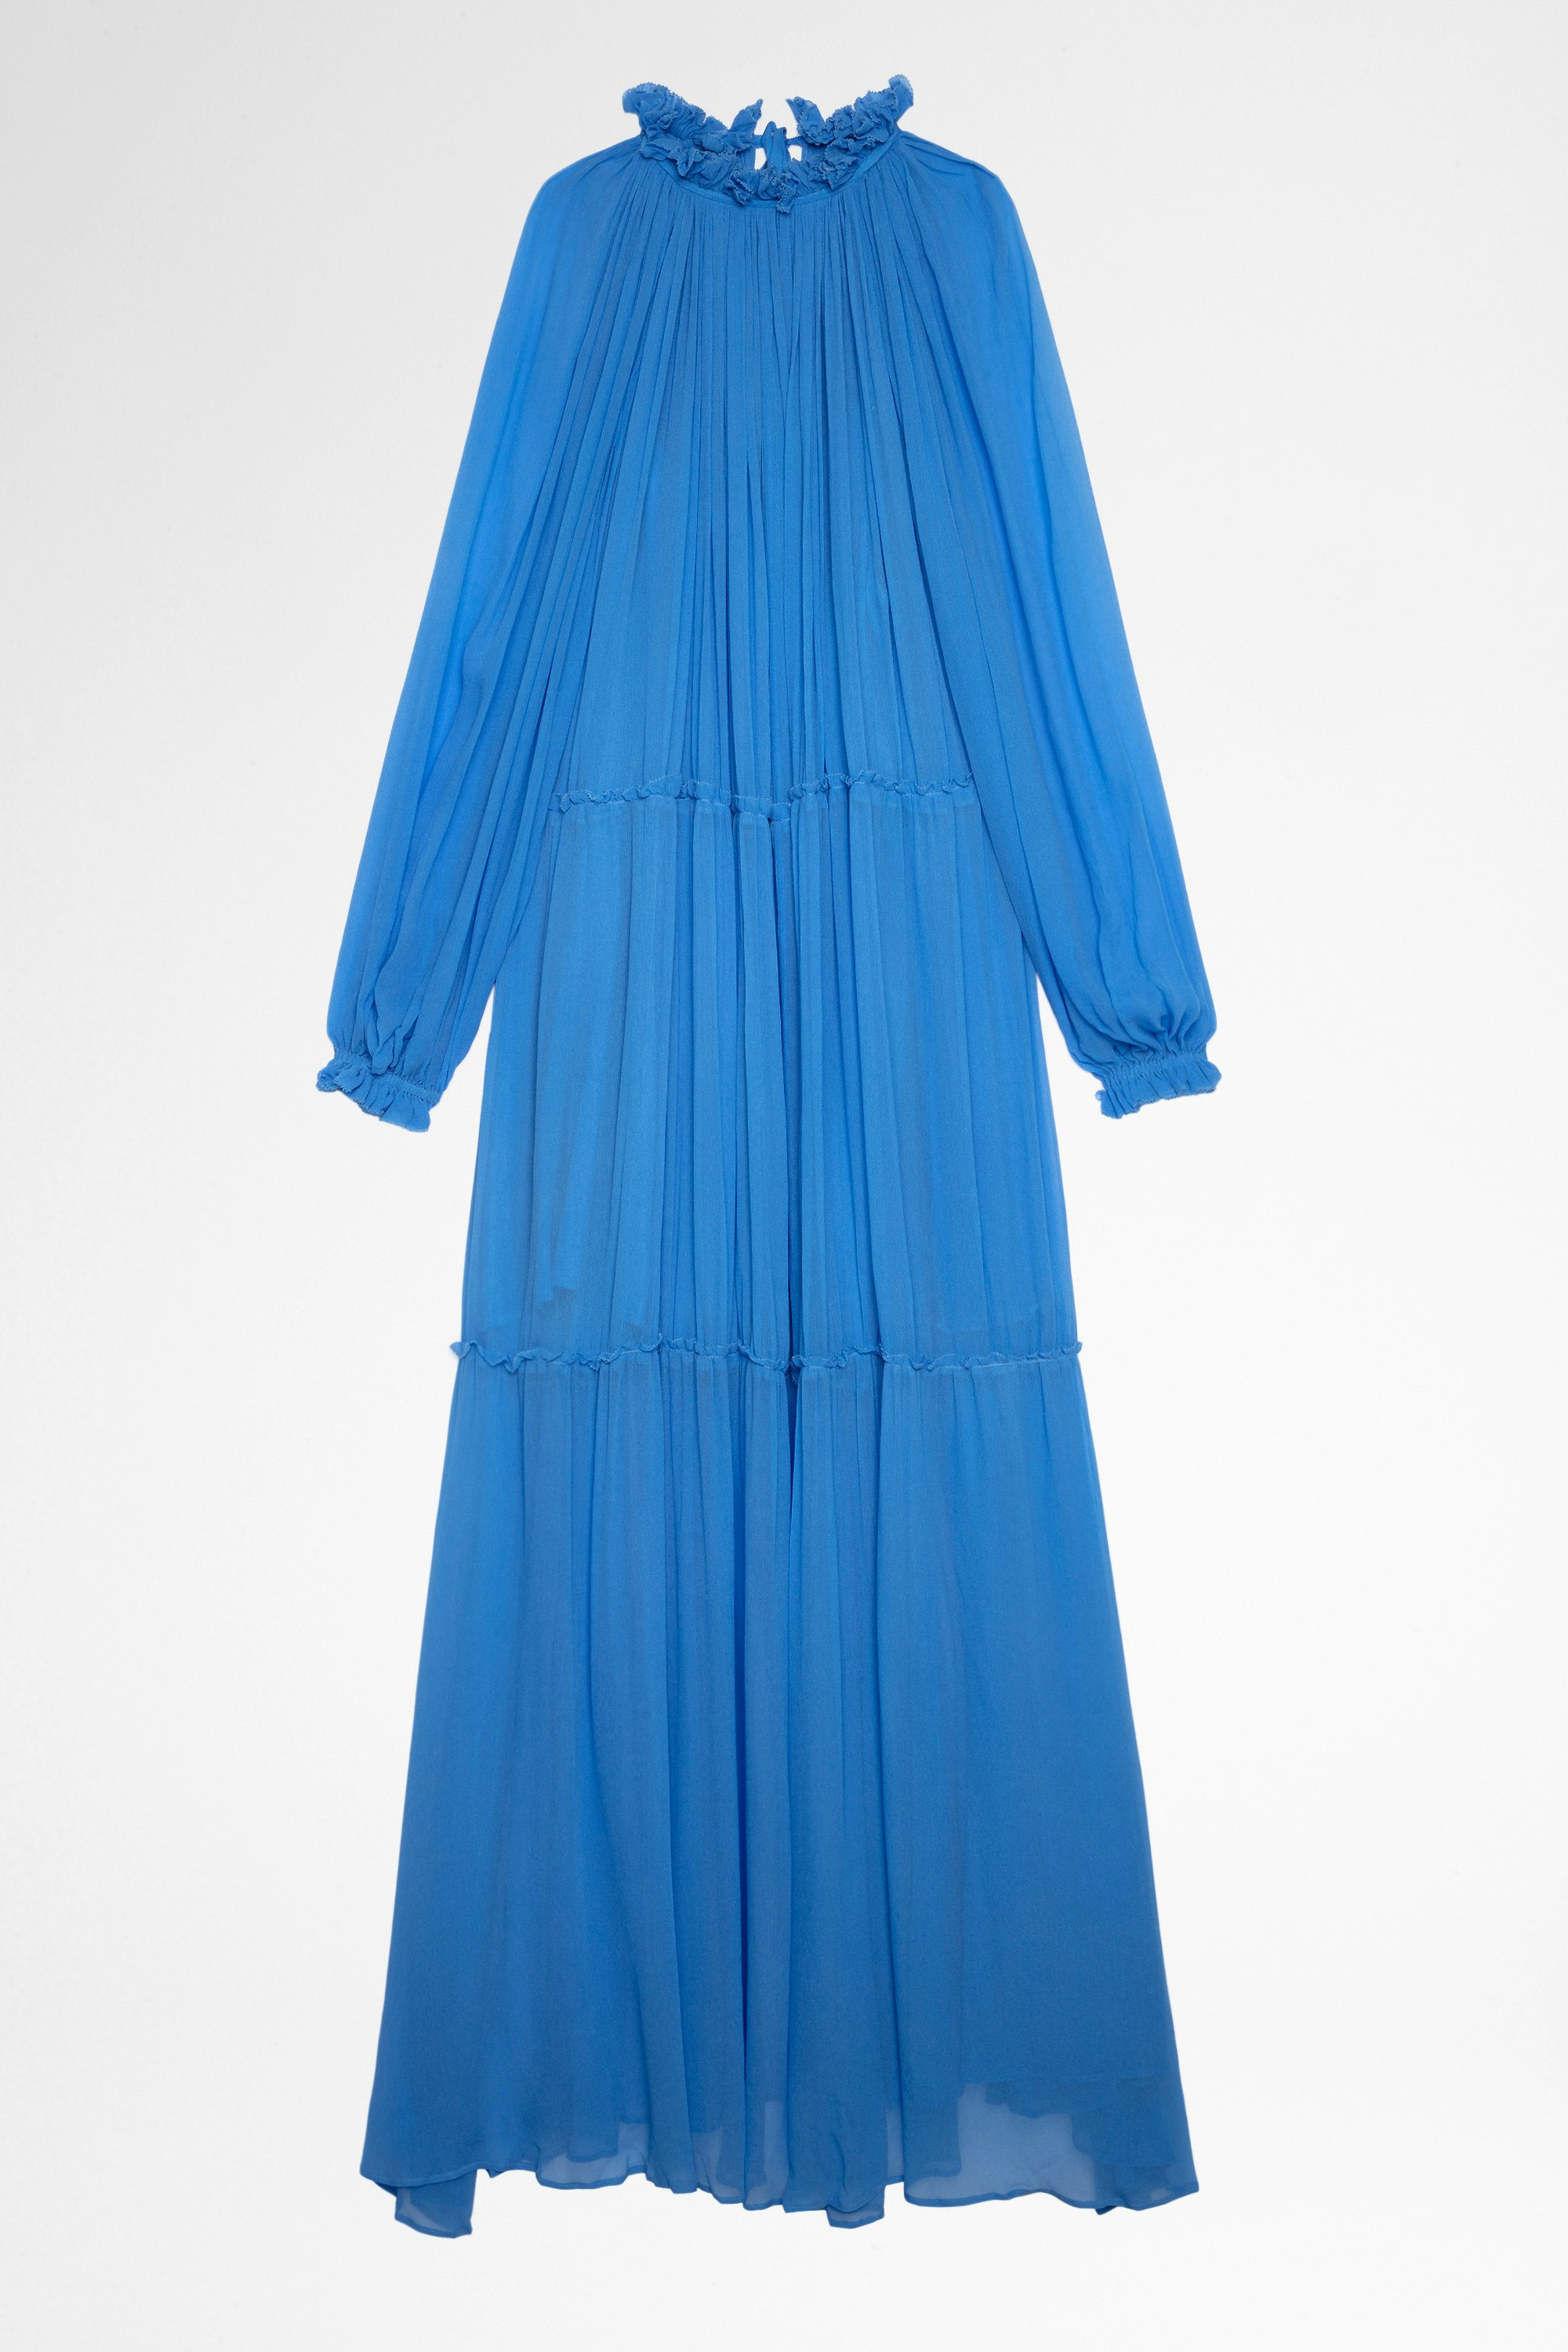 Kleid Razzia Langes Kleid in Himmelblau mit langen Ärmeln